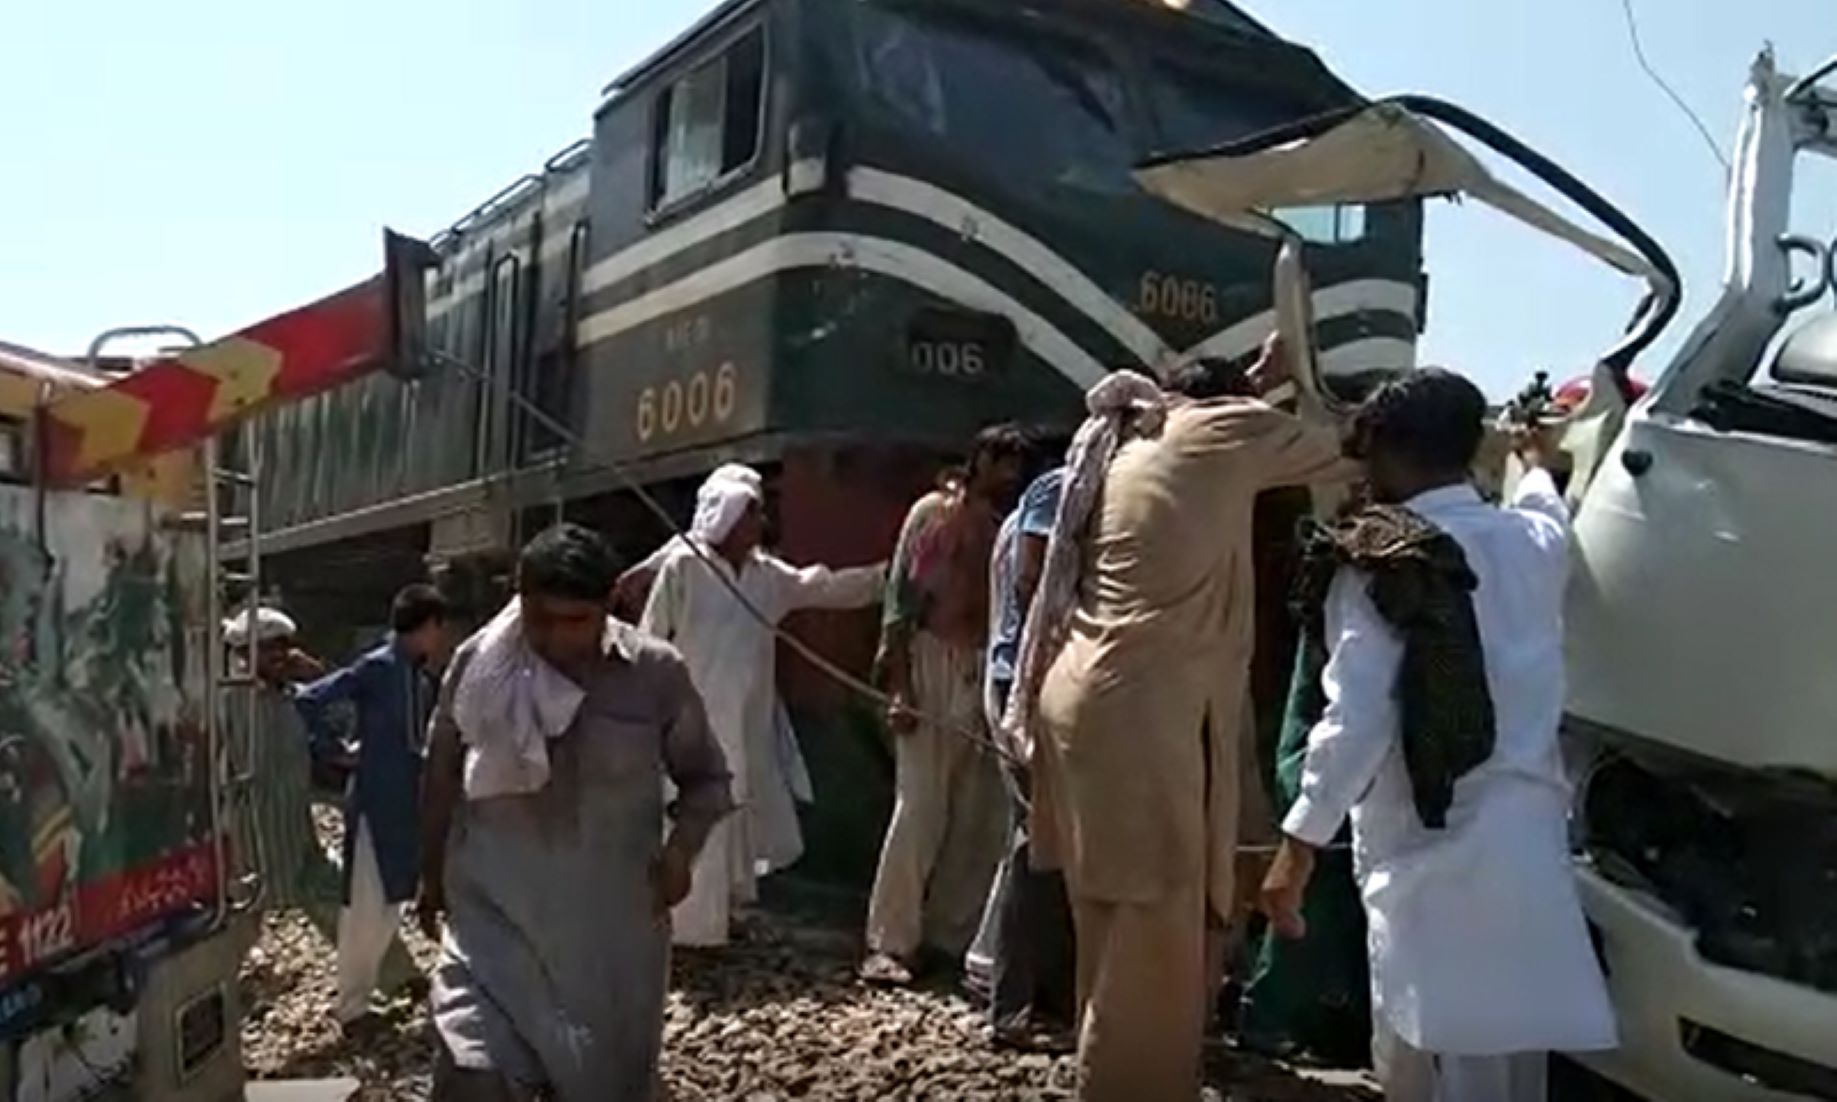 29 Injured As Passenger Train Hit Cargo Train In Punjab